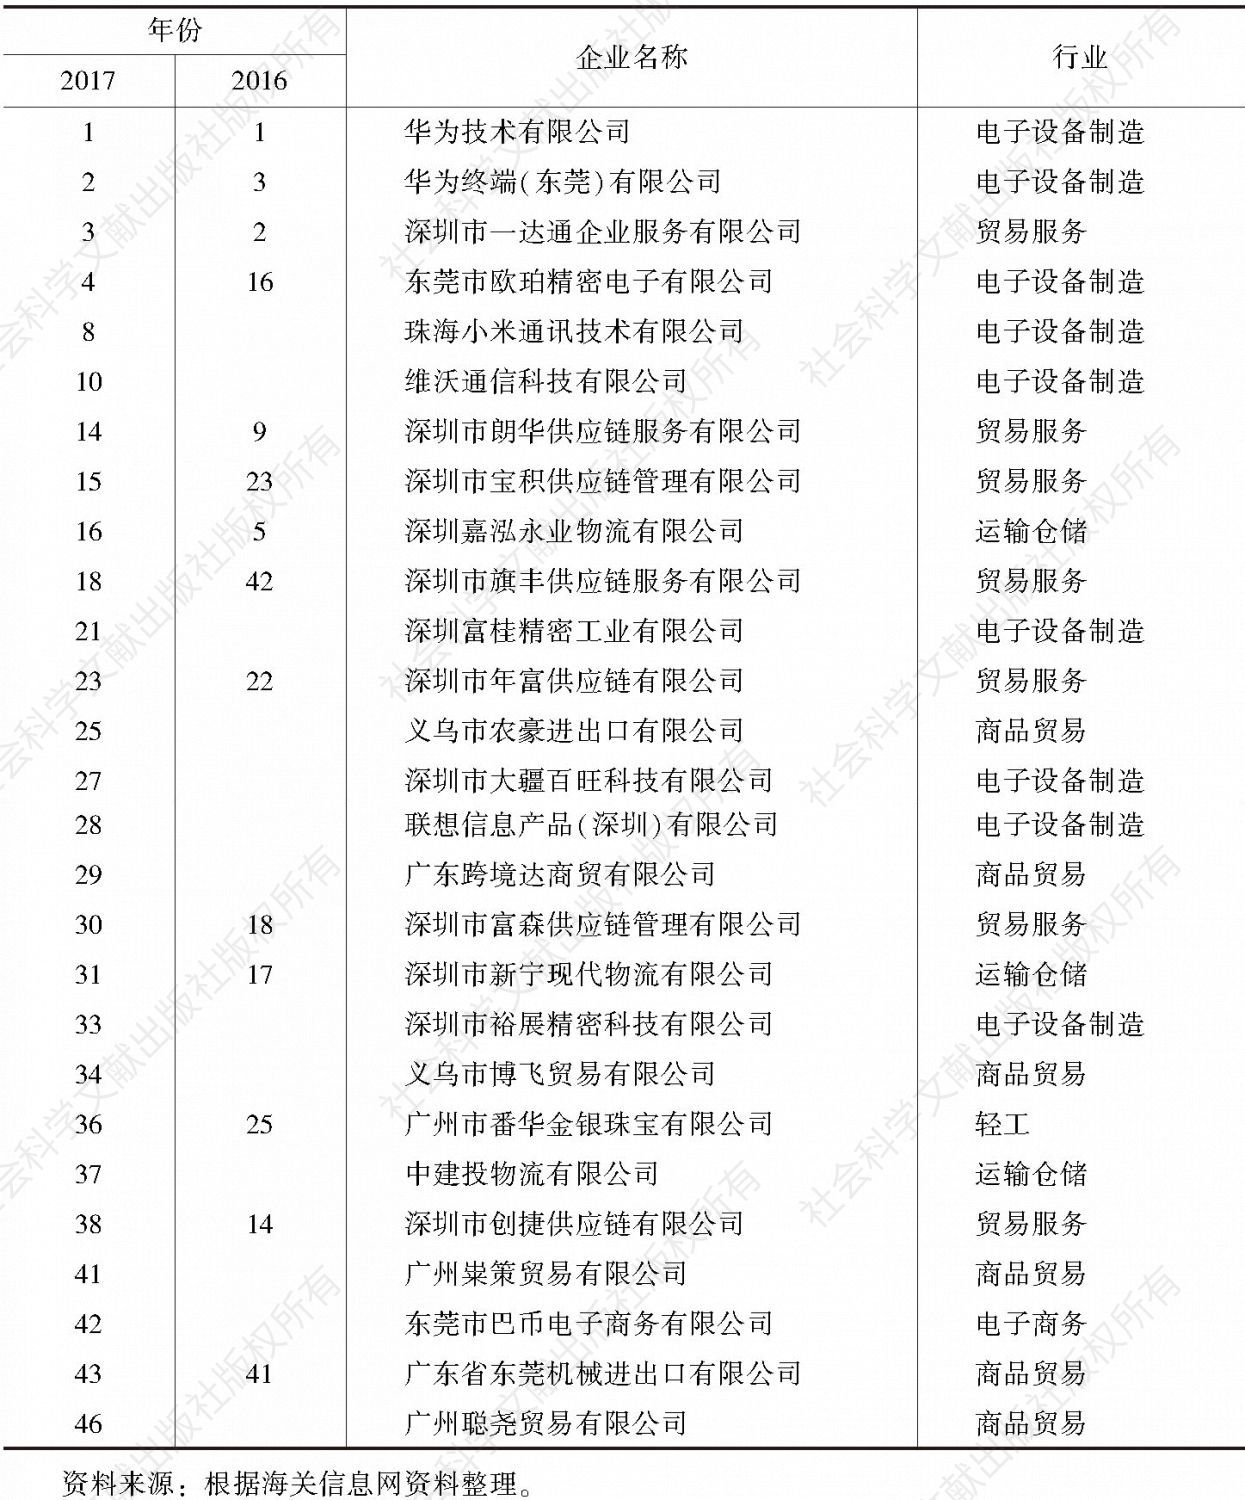 表5 2017年广东省民营企业出口50强上榜企业出口及排名情况